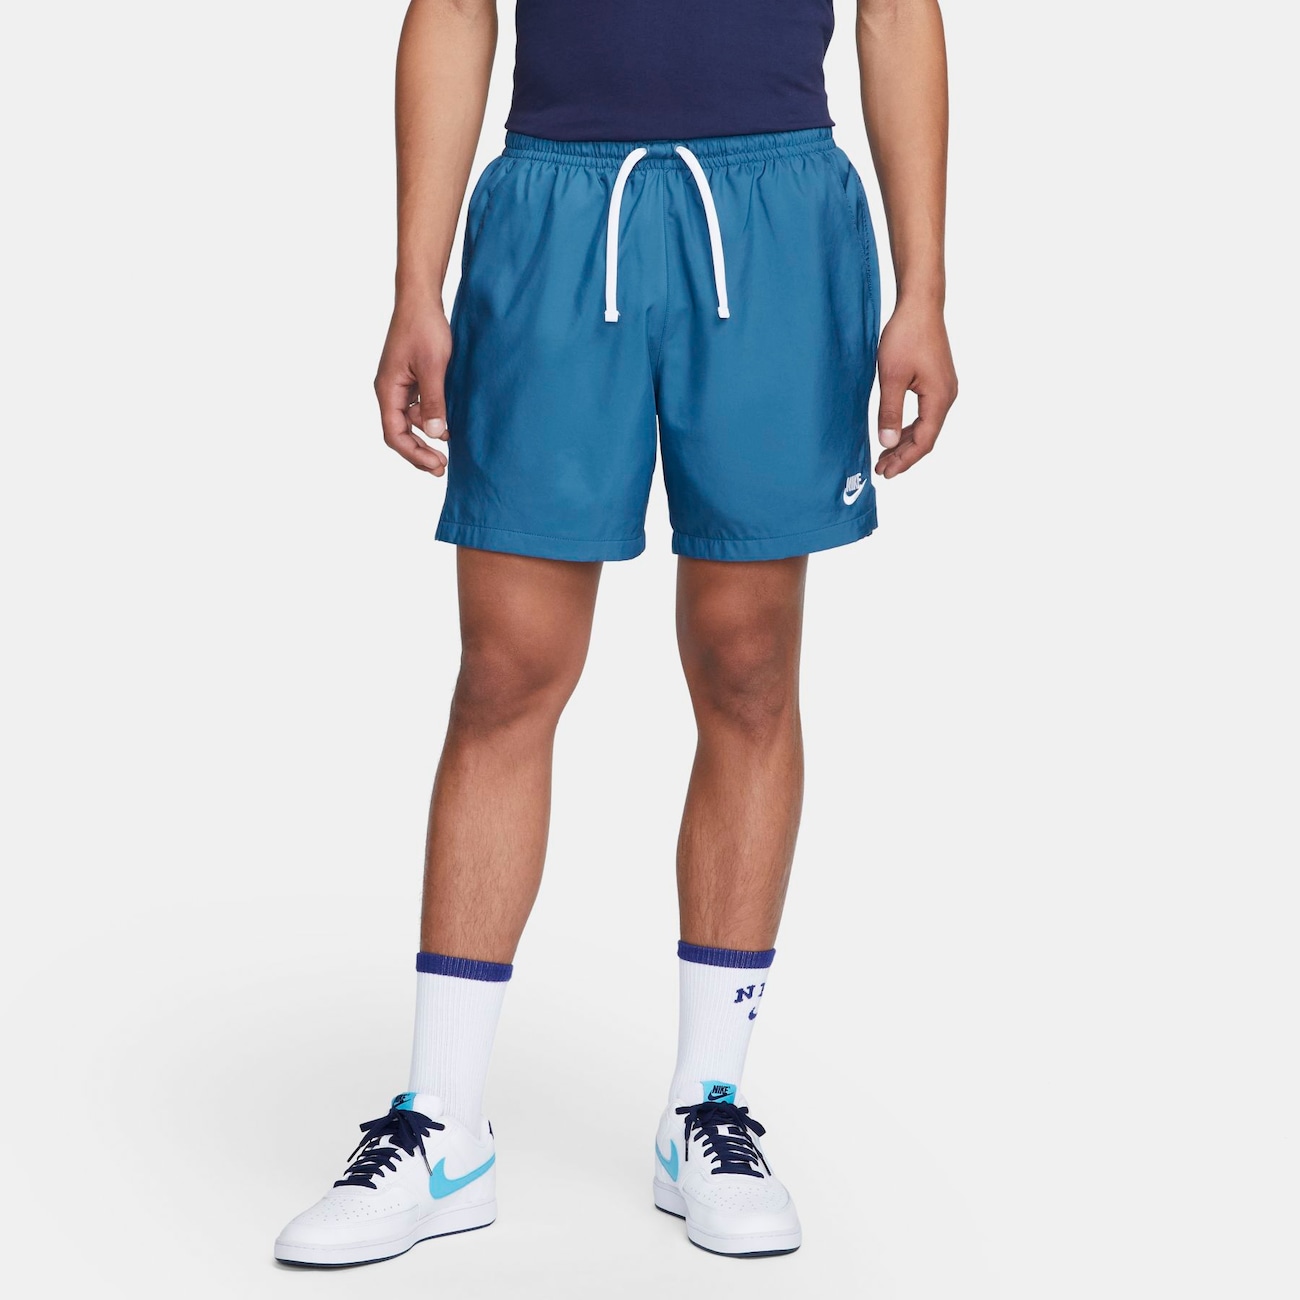 Shorts Nike Sportswear Woven Masculino